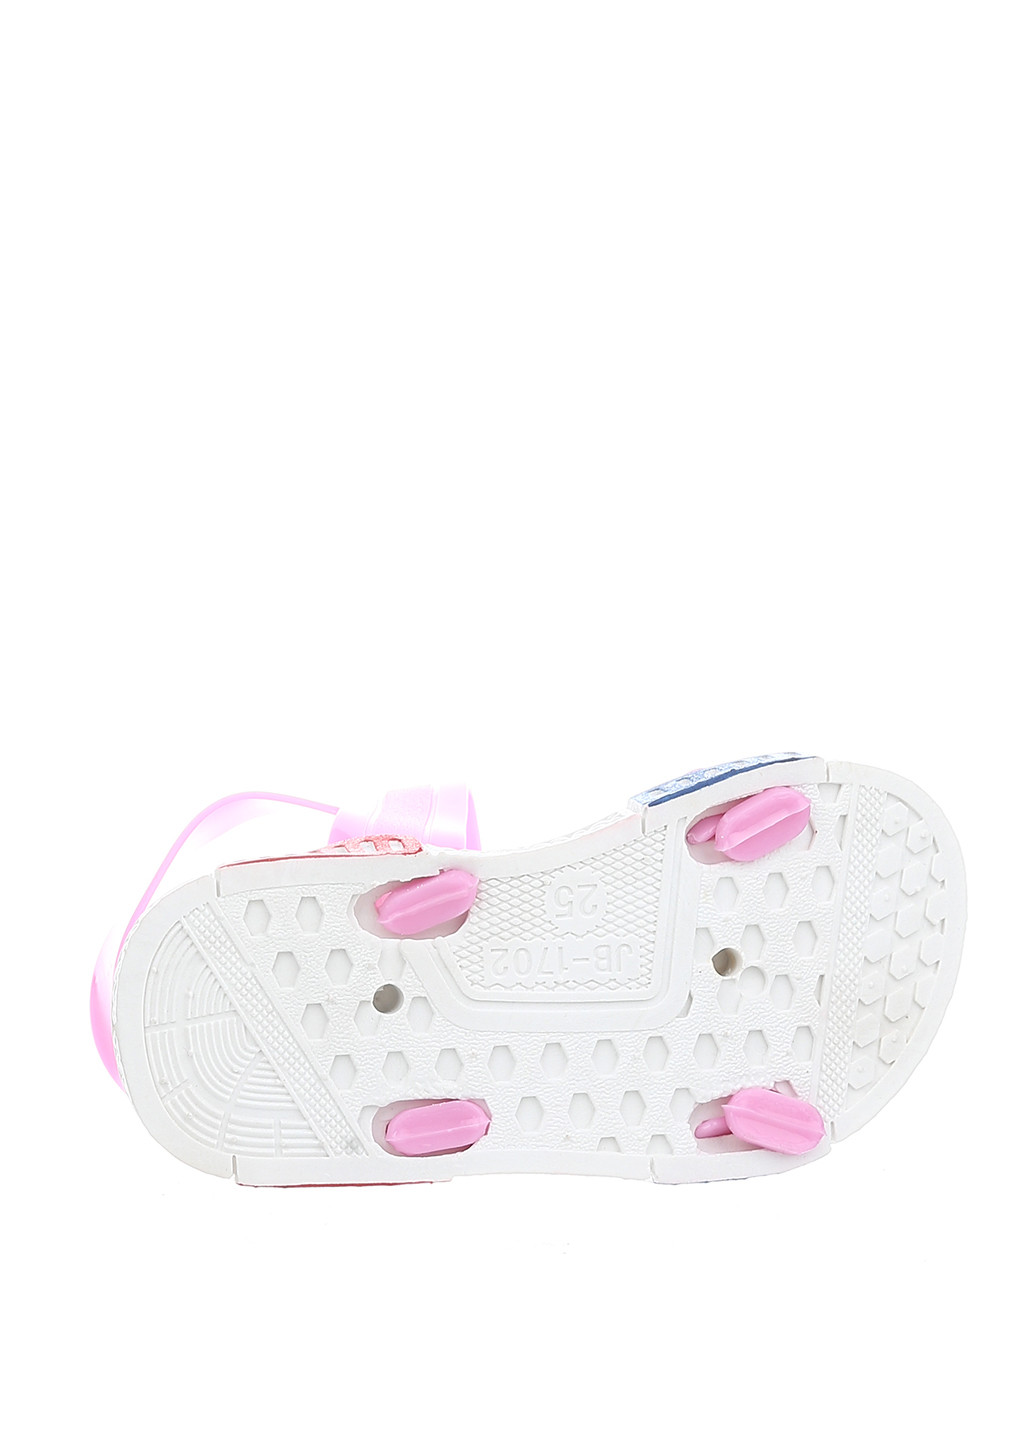 Розовые пляжные сандалии Fashion на кнопках